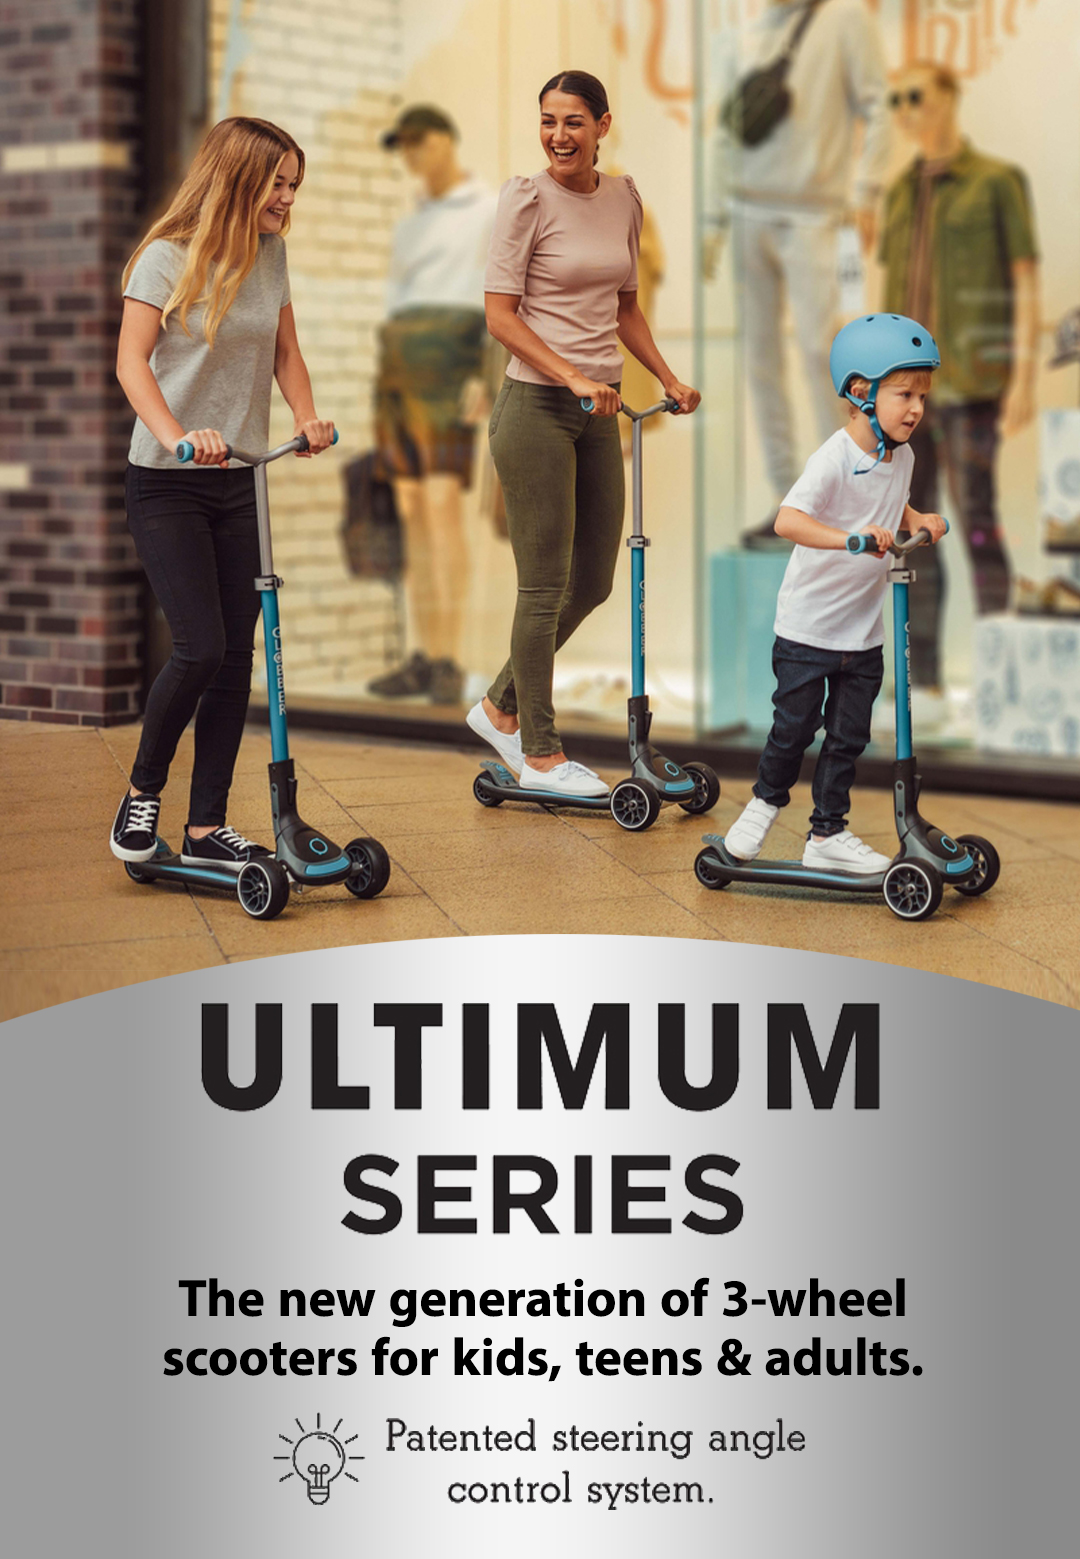 ULTIMUM-series-3-wheels-scooter_